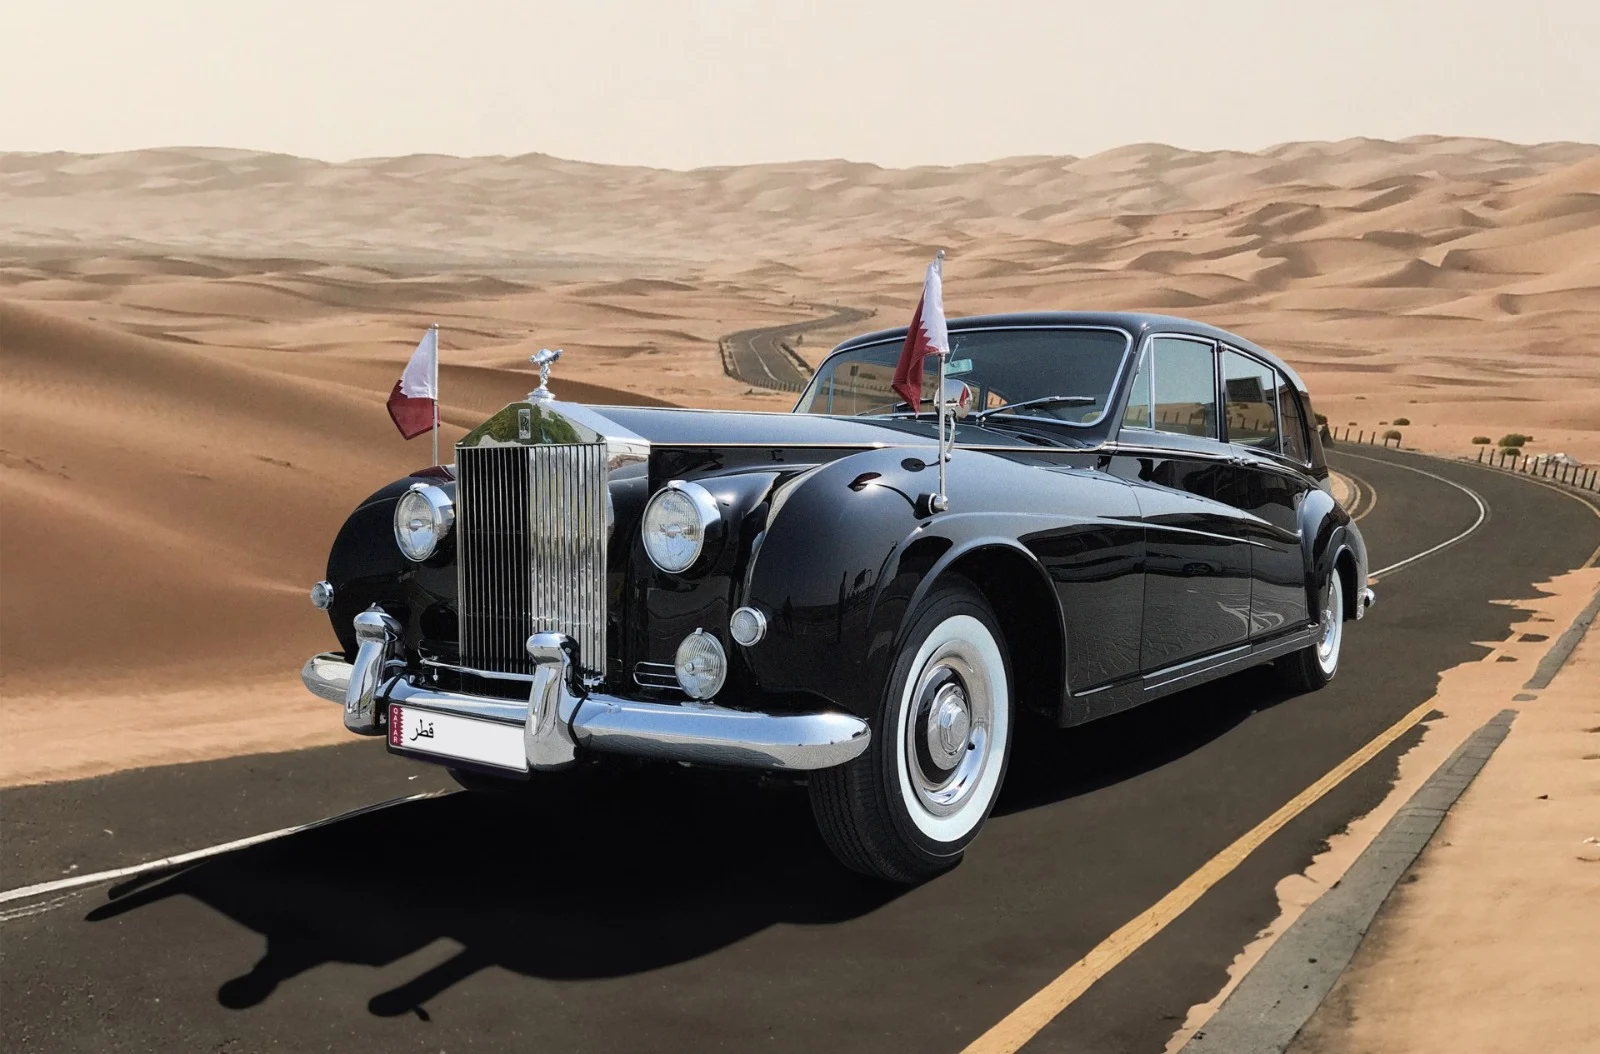 من الطراز القديم إلى الحديث: التاريخ الرائع للسيارات الكلاسيكية